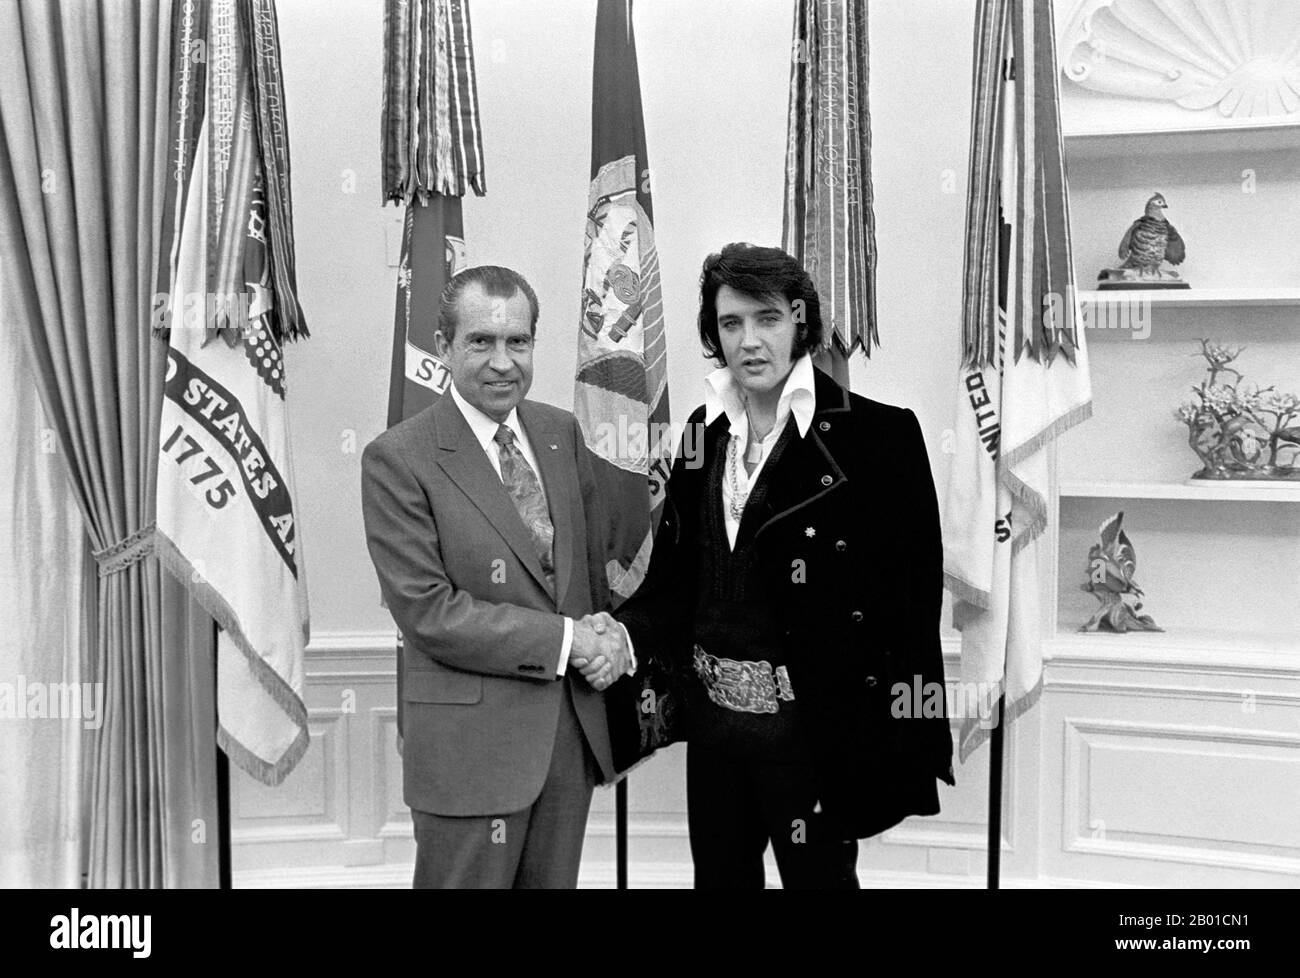 Estados Unidos: El presidente Richard Nixon (9 de enero de 1913 - 22 de abril de 1994) estrechando la mano con Elvis Presley (8 de enero de 1935 - 16 de agosto de 1977) en la Casa Blanca, el 21 de diciembre de 1970. Elvis Presley conoció al presidente Richard Nixon en la Oficina Oval de la Casa Blanca el 21st de diciembre de 1970. La Biblioteca y lugar de nacimiento de Nixon vende una serie de artículos de recuerdo con esta foto y el título, 'El Presidente y el Rey'. Hojally, esta imagen se dice para ser ' de los dos artistas más grandes de la grabación del siglo 20th '. Foto de stock